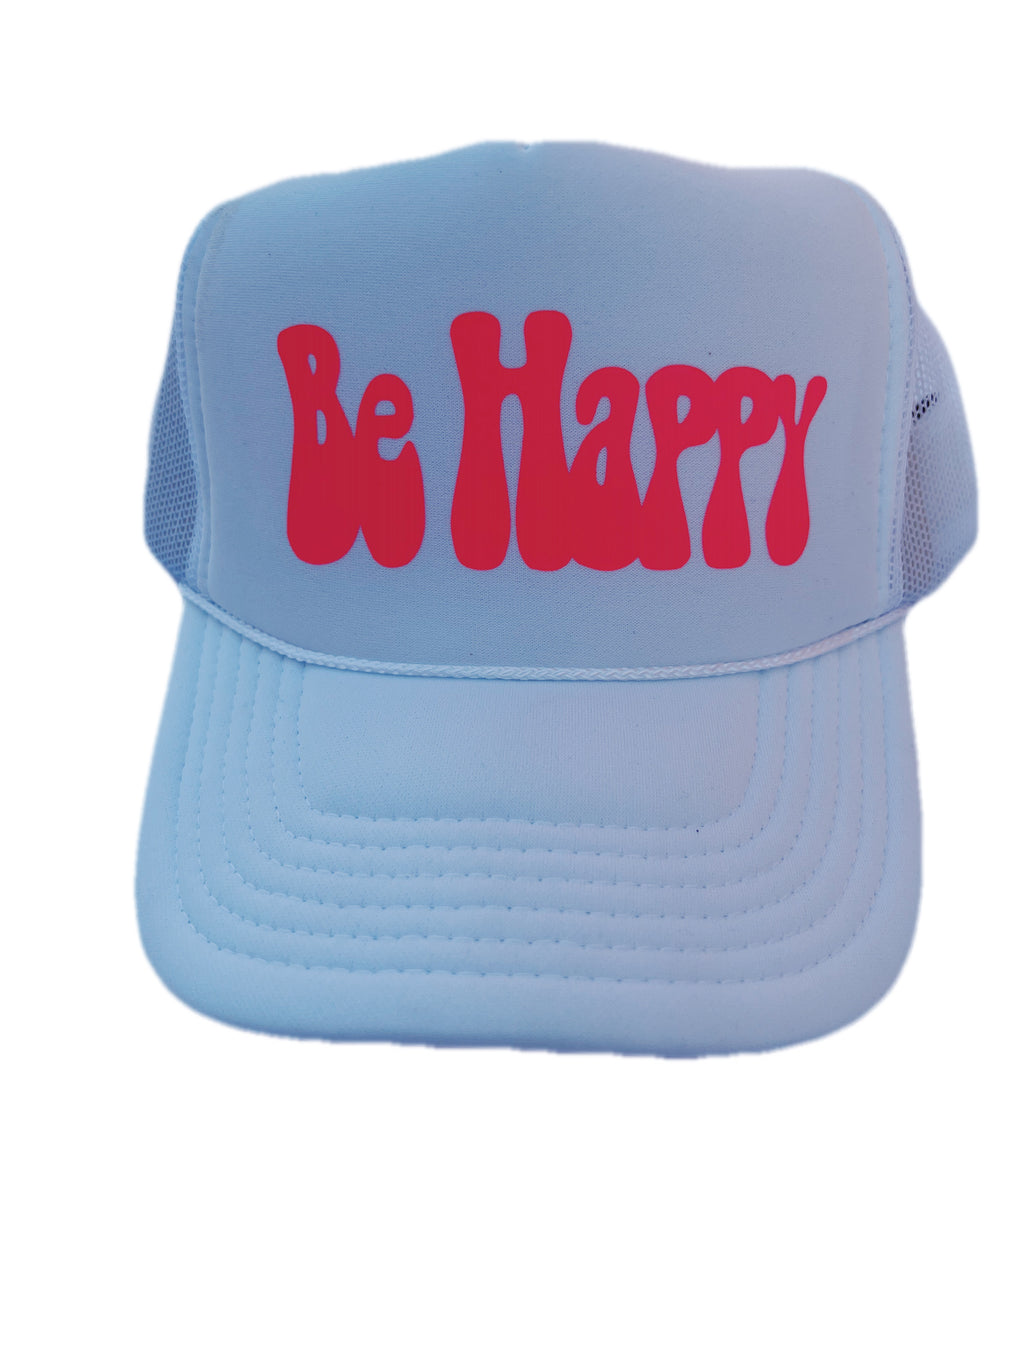 BE HAPPY !!!